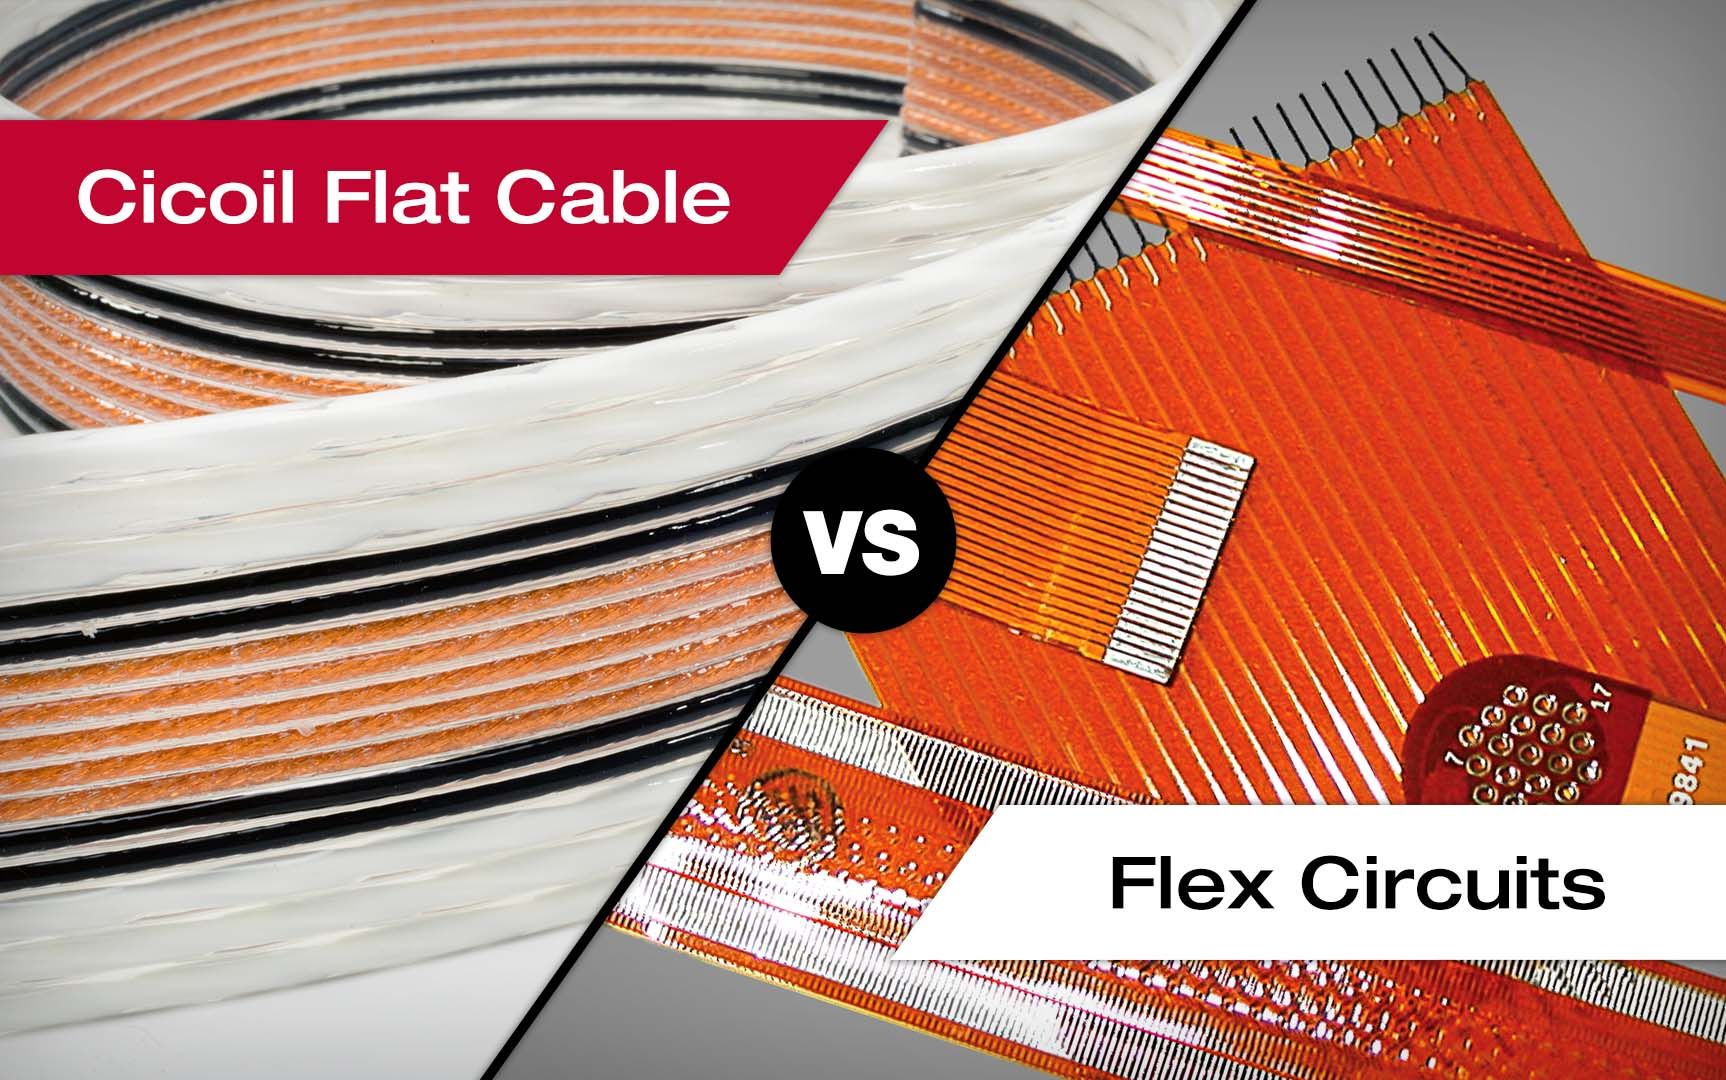 Cicoil Flat Cable vs Flex Circuits